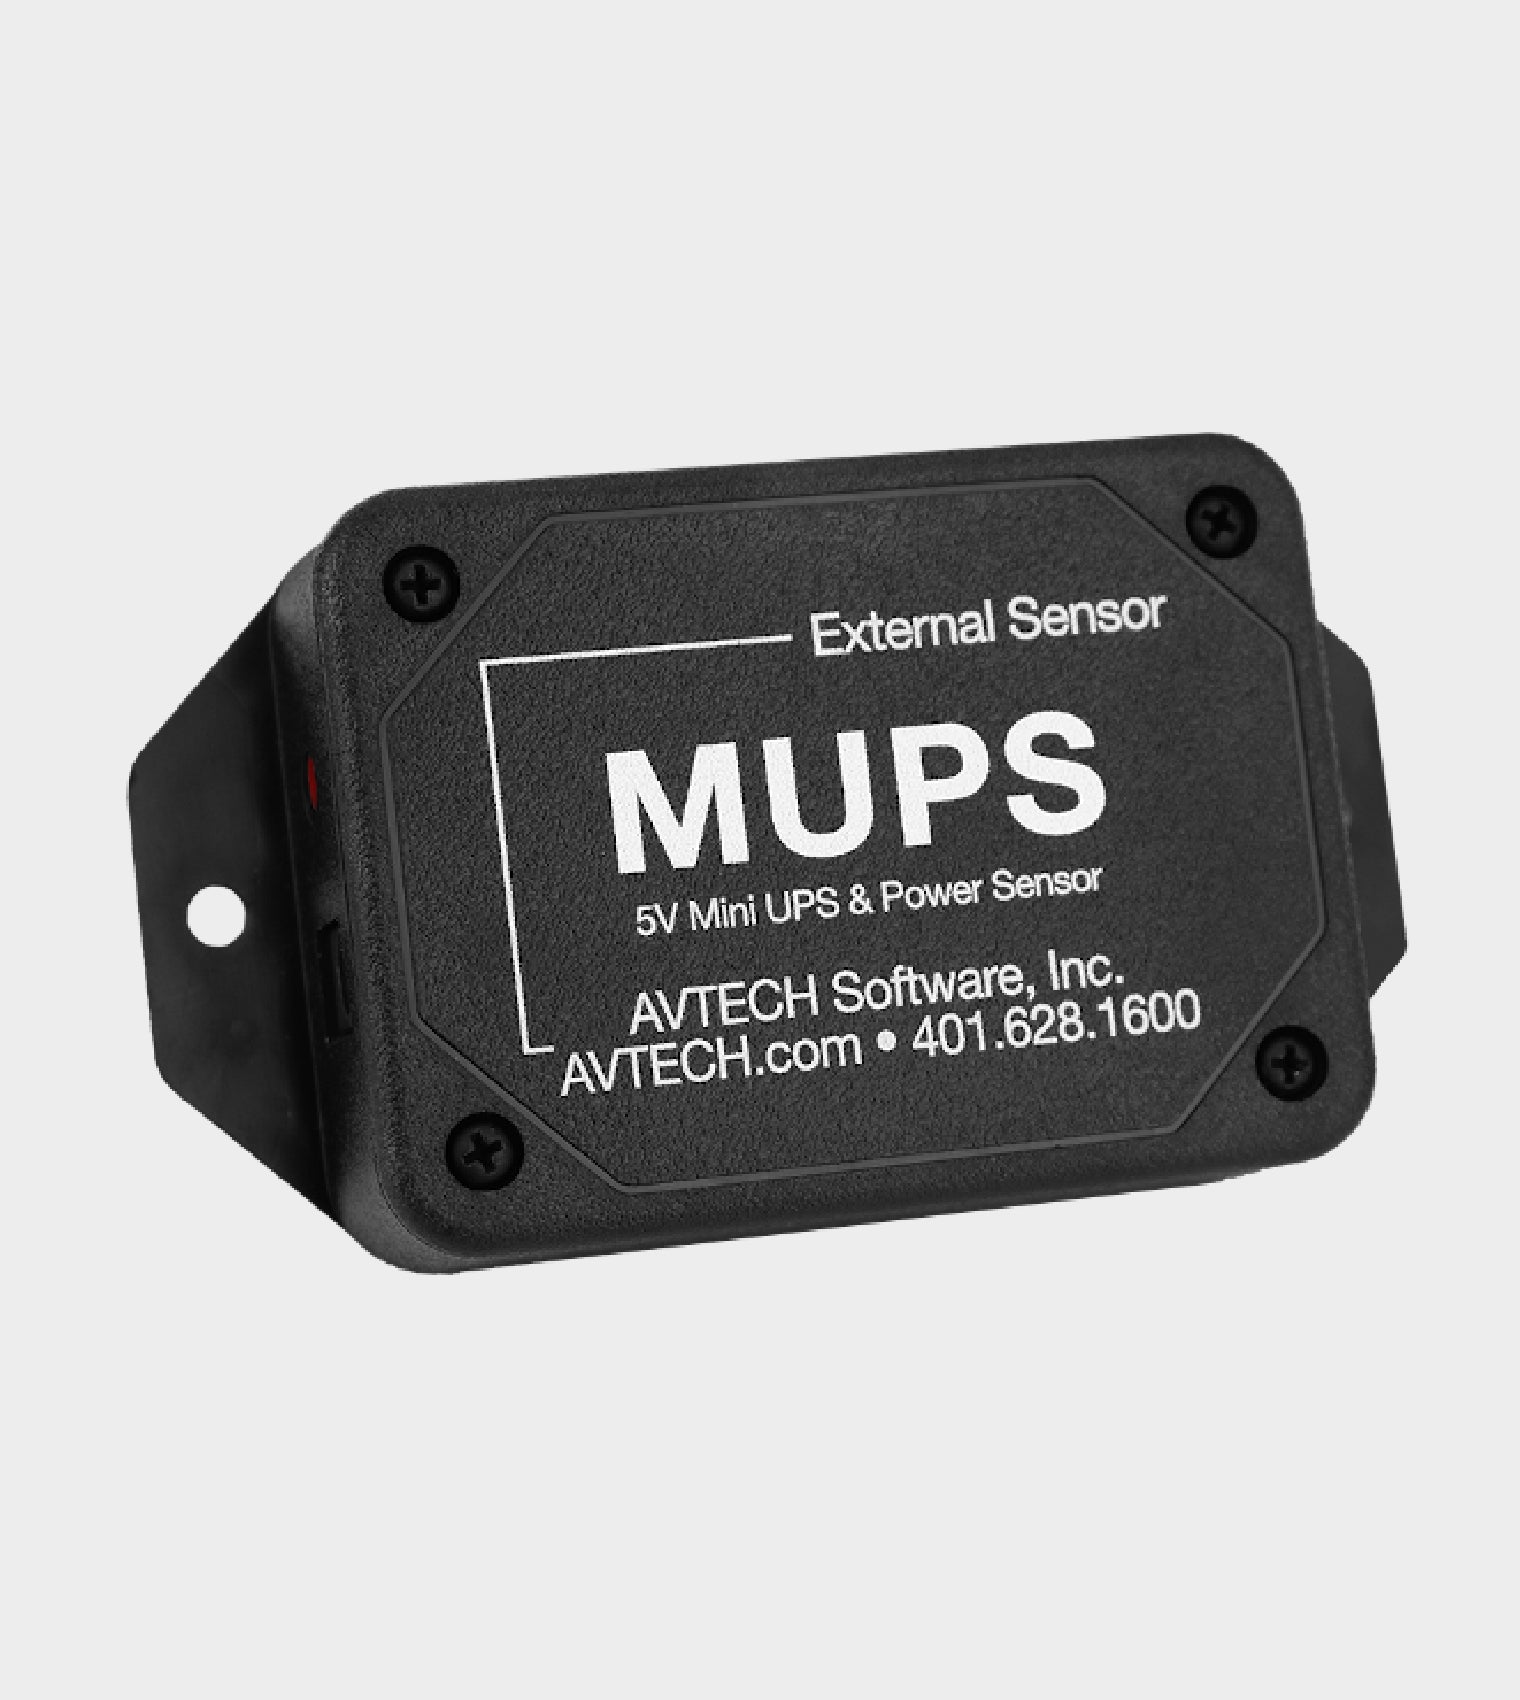 Mini UPS & Power Sensor